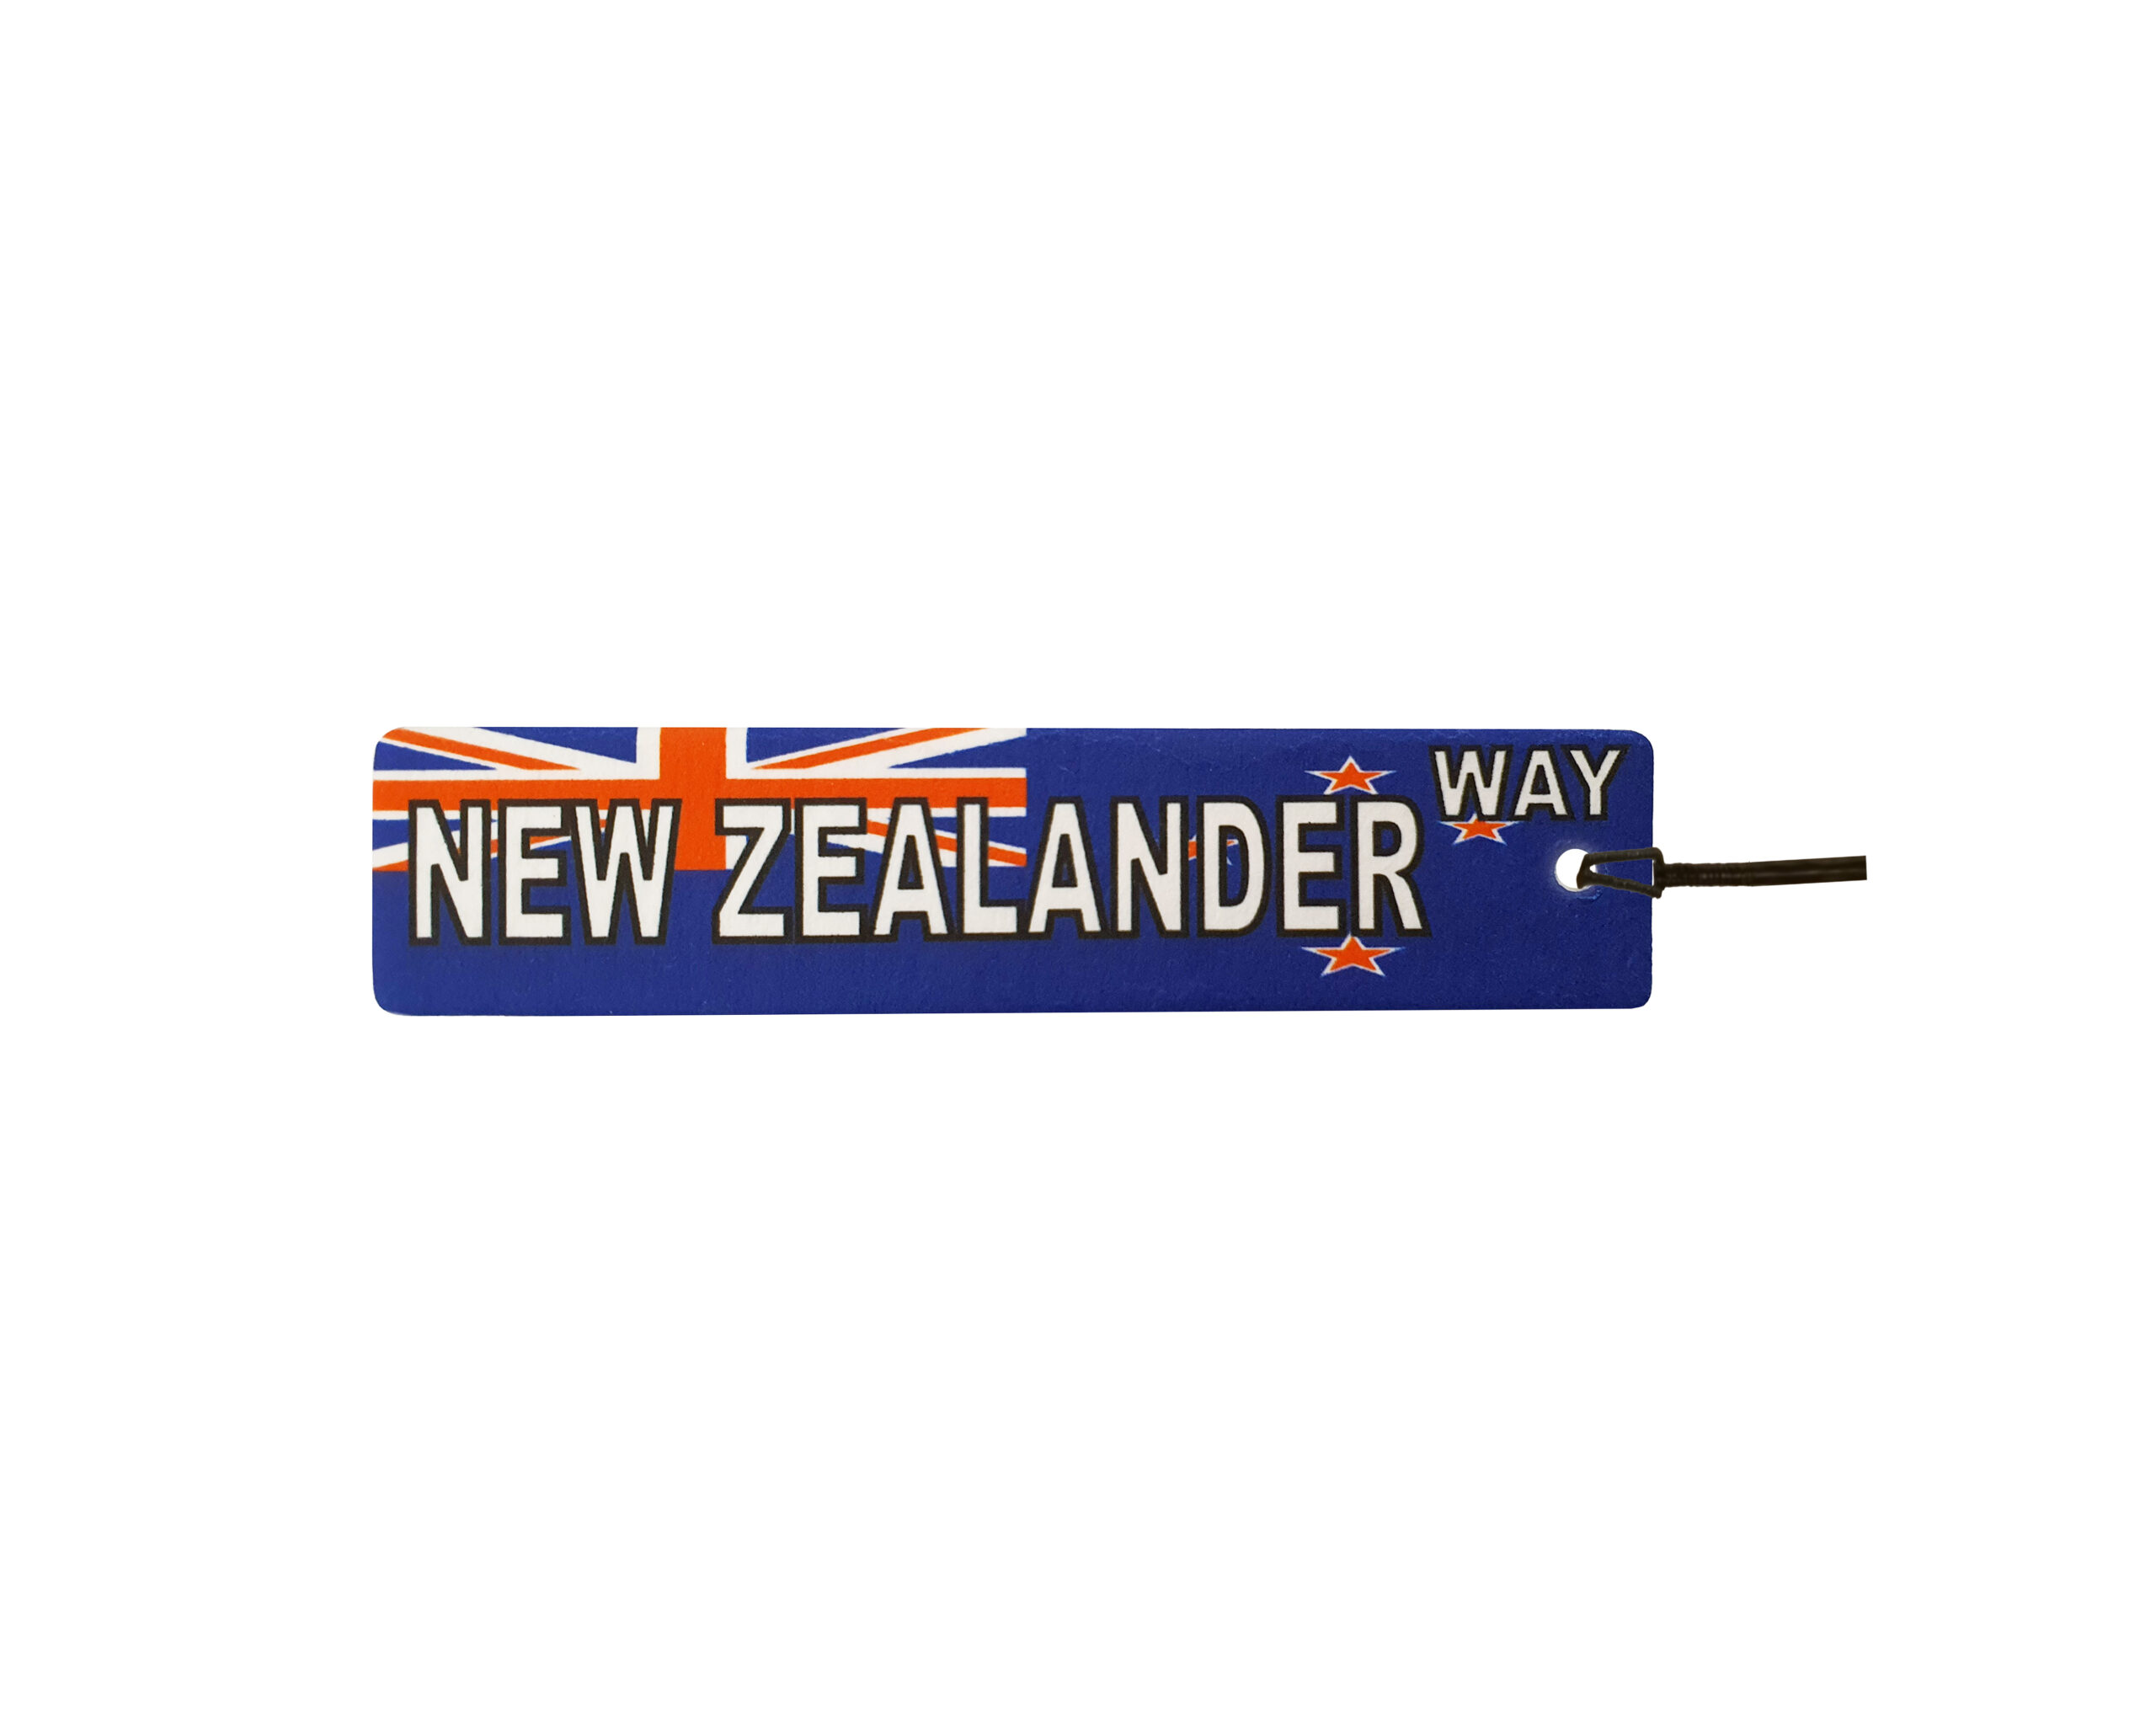 New Zealander Way Street Sign